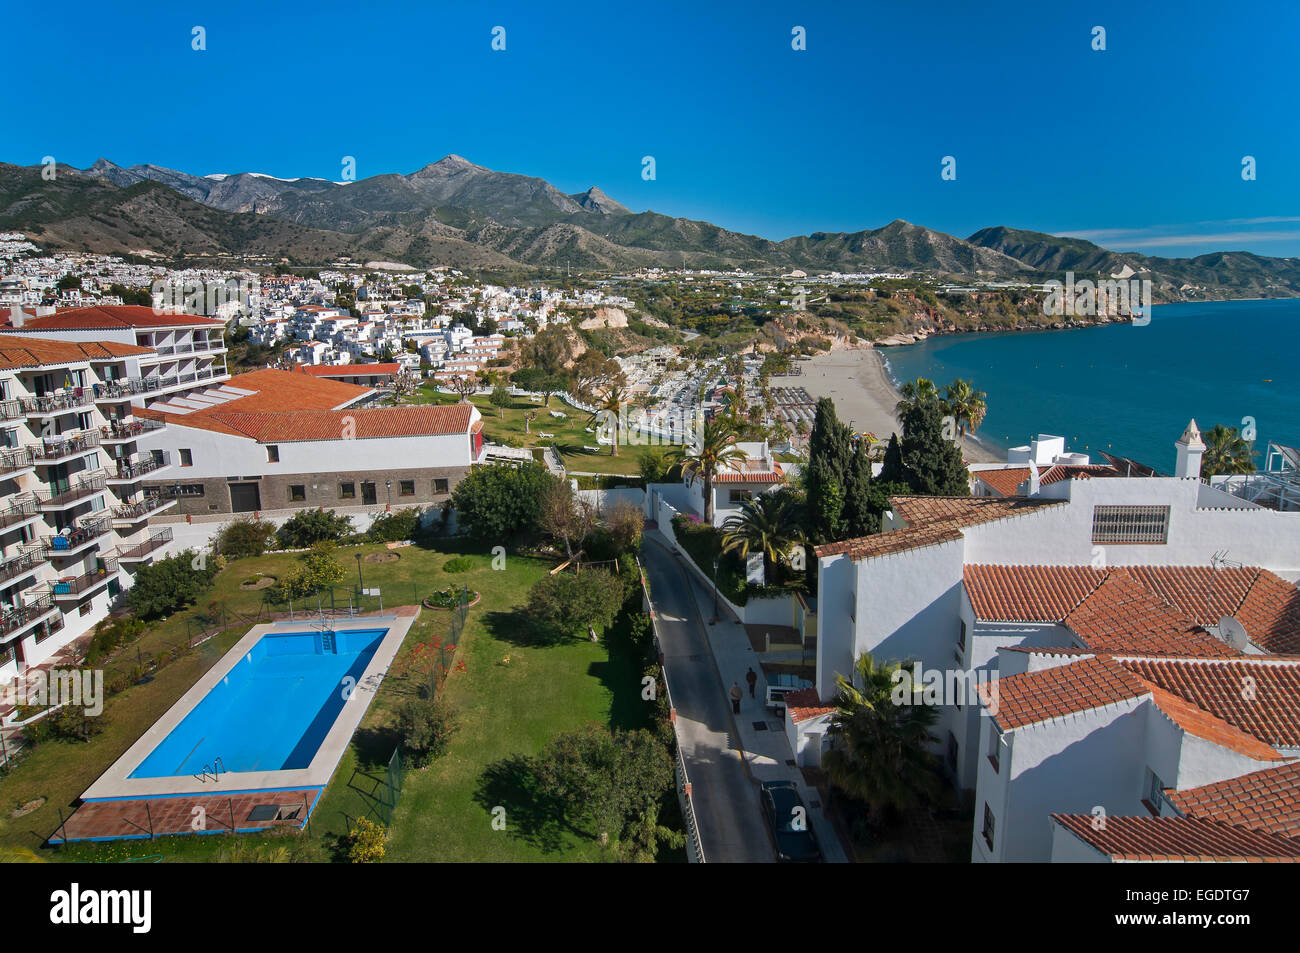 Vue panoramique, Nerja, Malaga province, région d'Andalousie, Espagne, Europe Banque D'Images